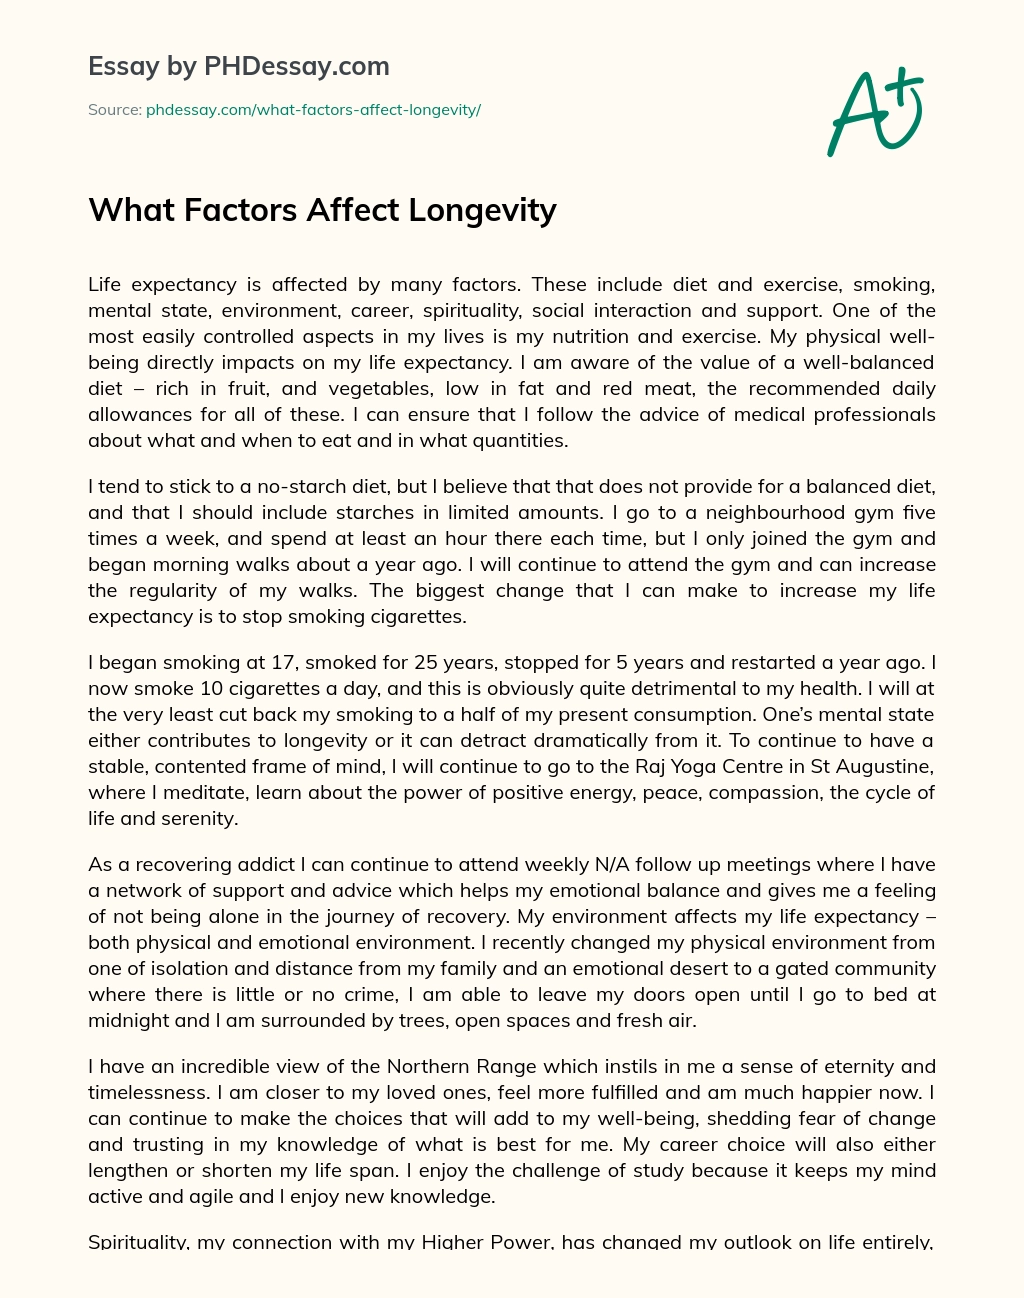 What Factors Affect Longevity essay